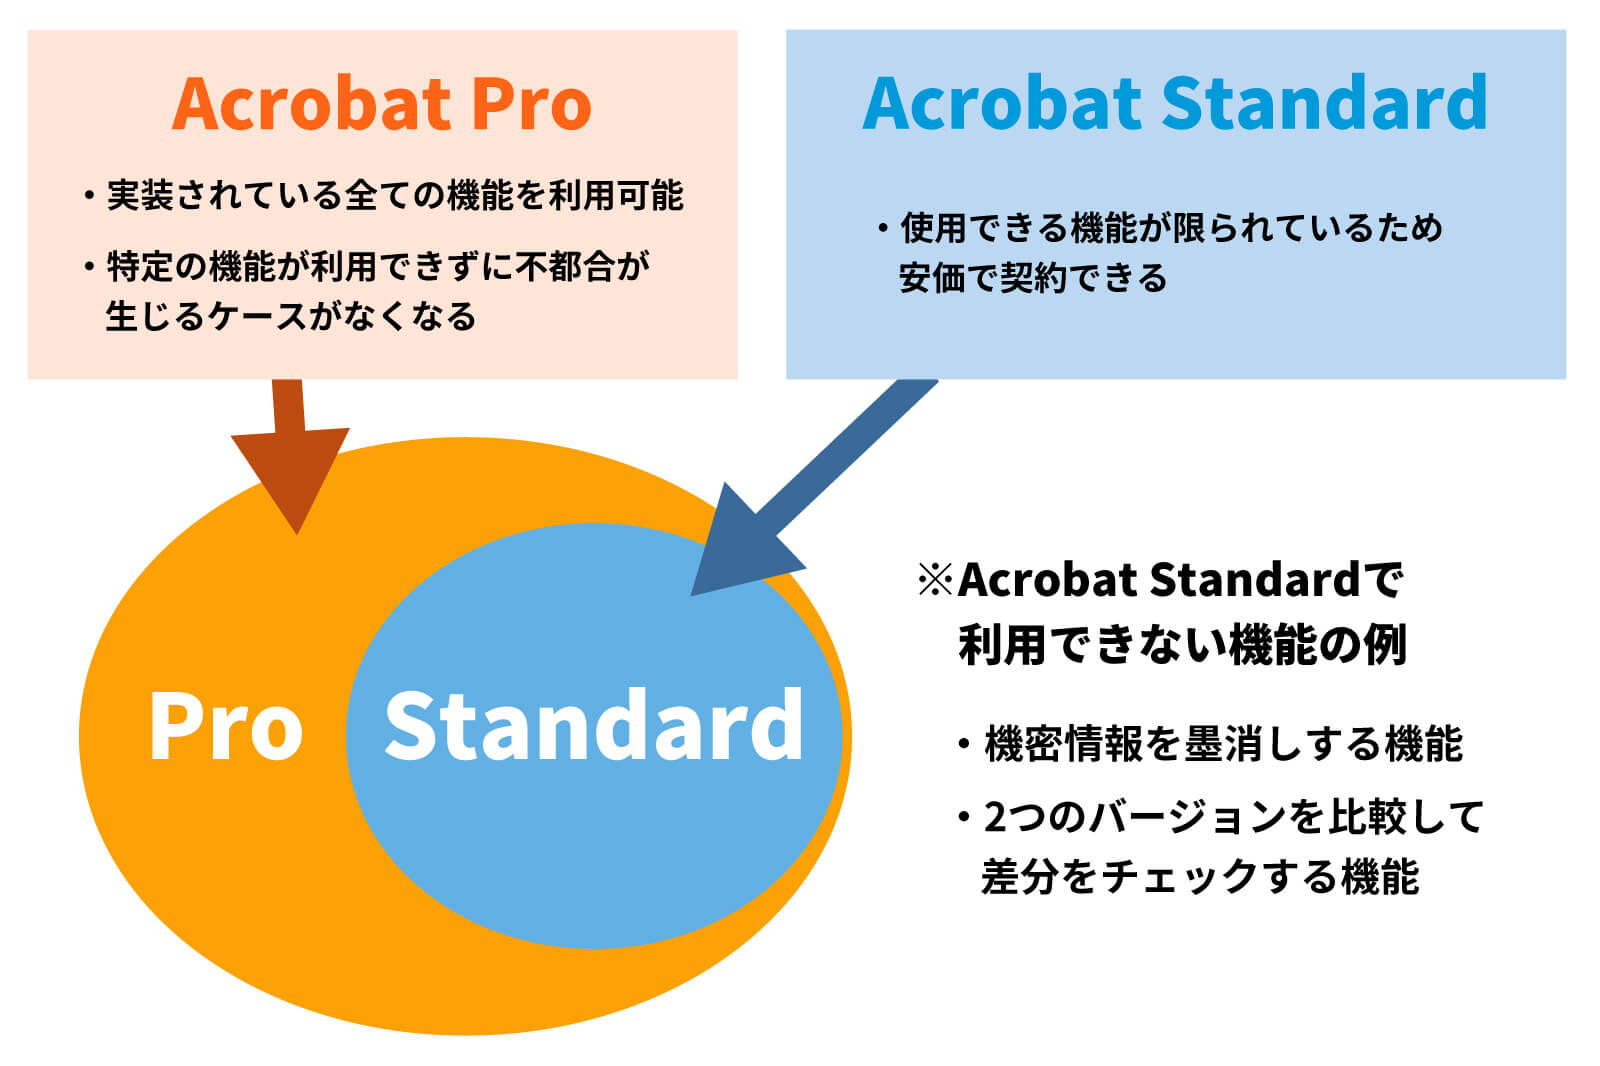 サブスクリプション版Acrobatにラインアップされている2つのライセンス